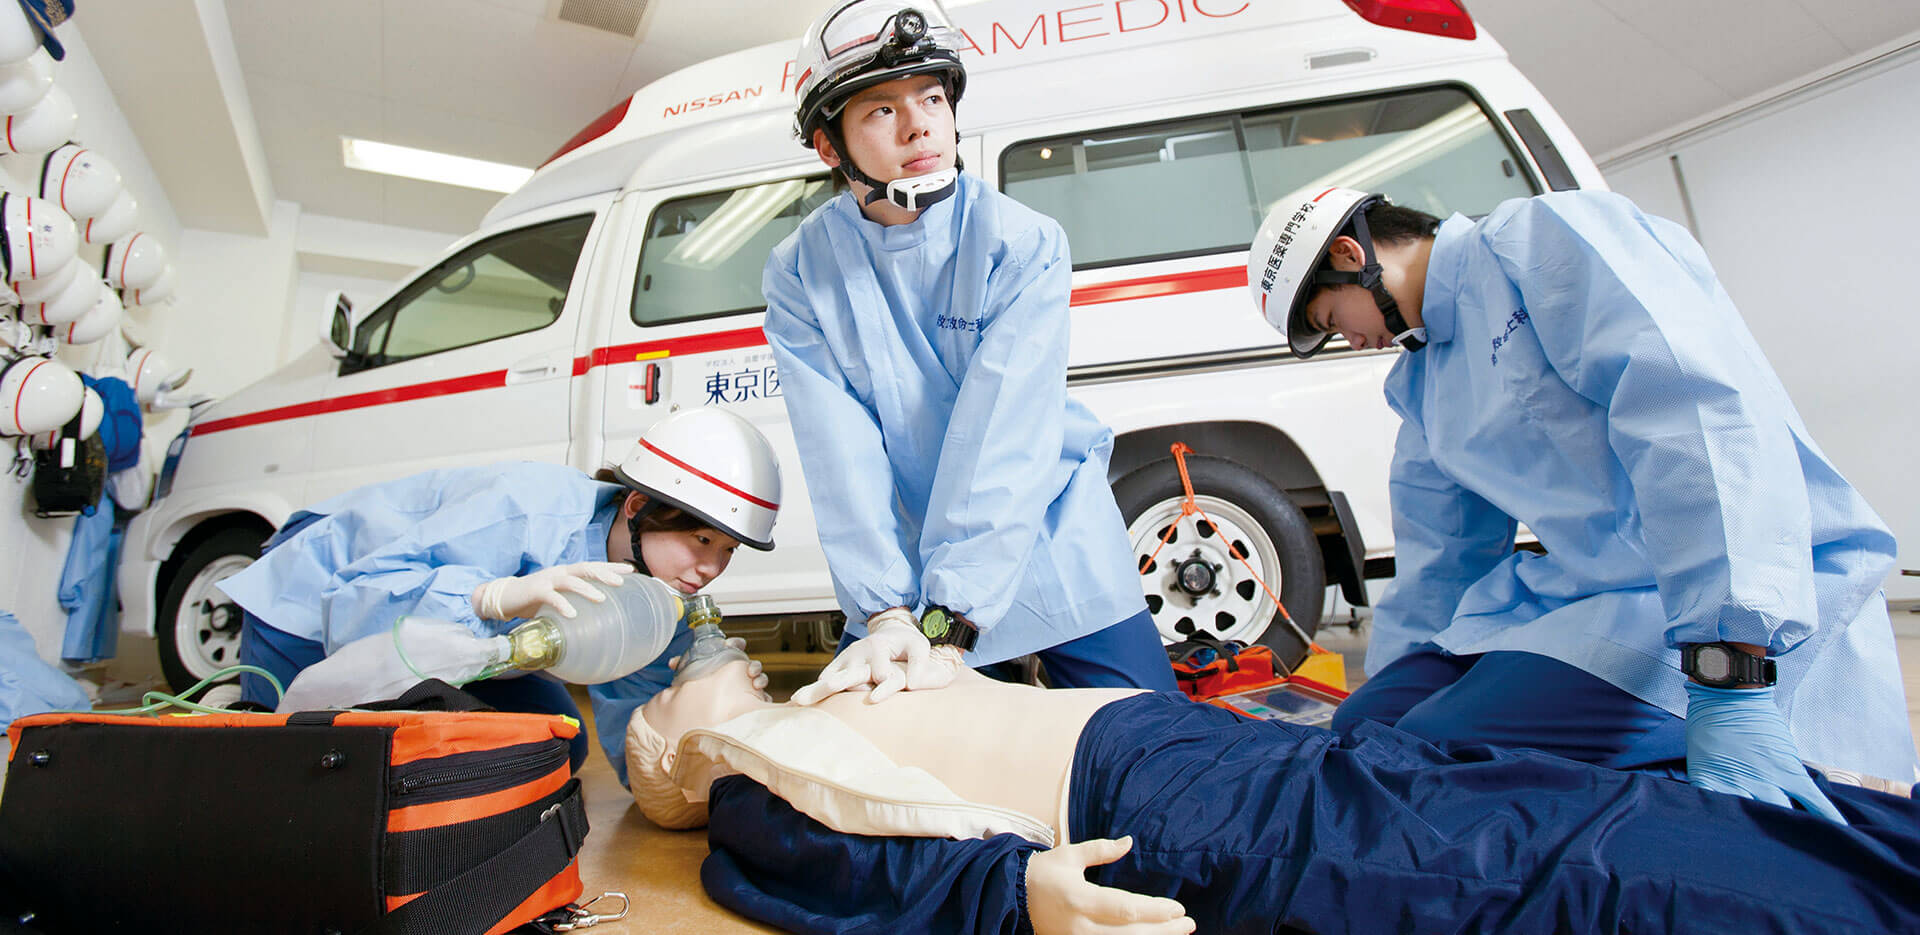 救急救命士 - Emergency medical technician - JapaneseClass.jp